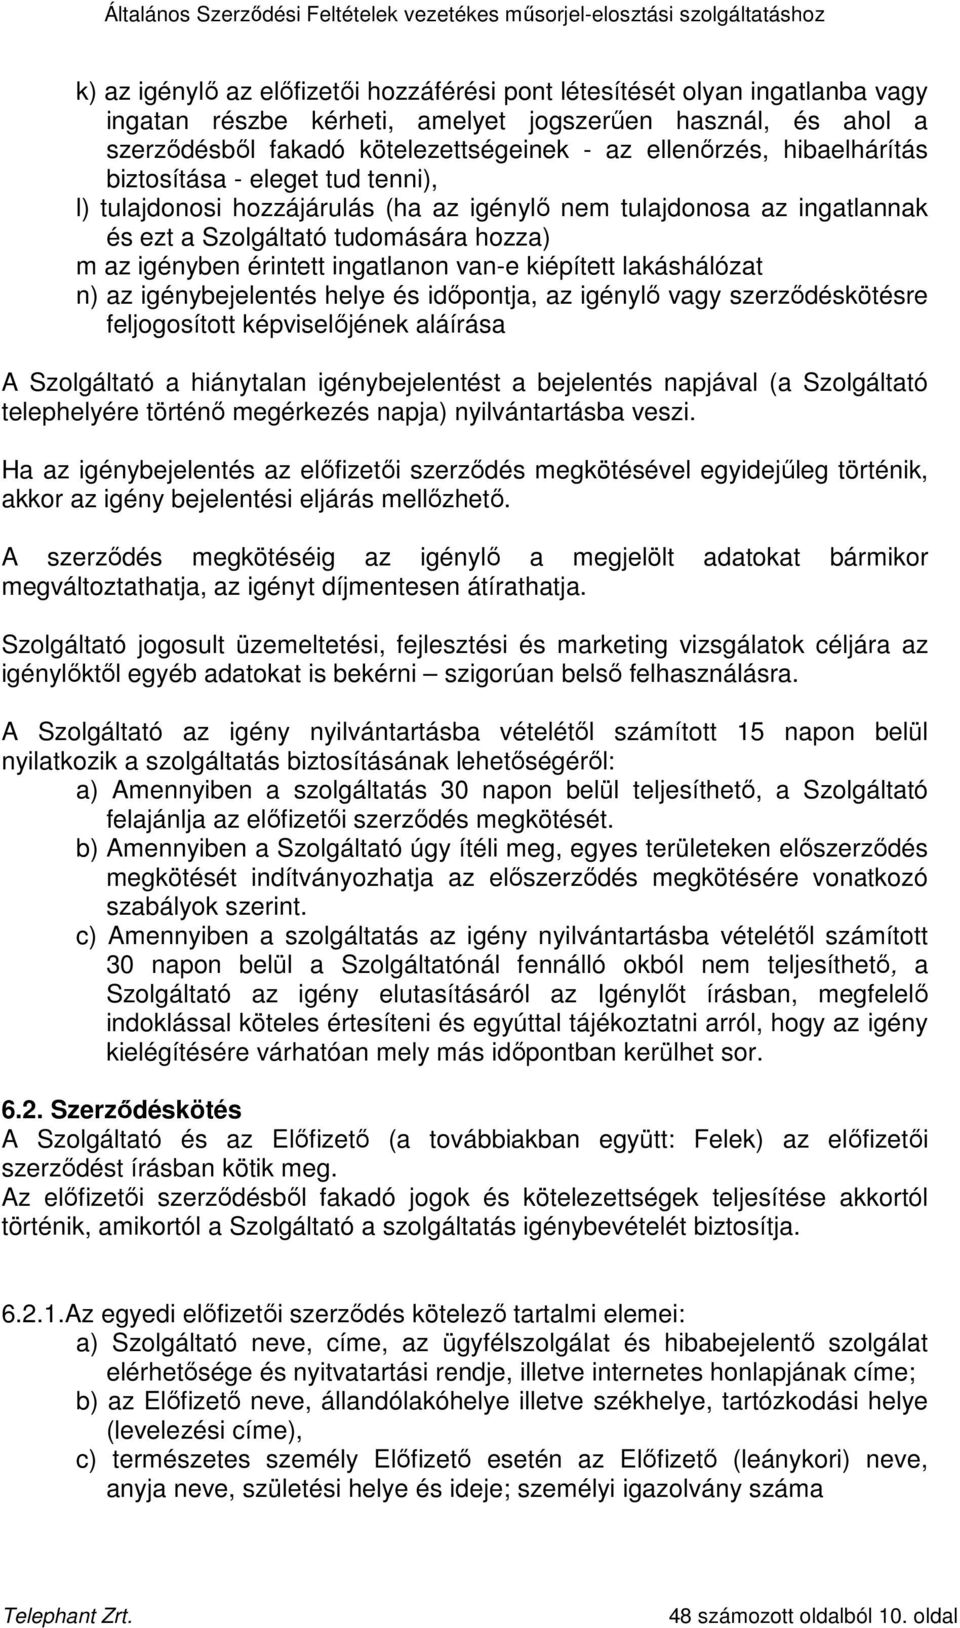 kiépített lakáshálózat n) az igénybejelentés helye és idıpontja, az igénylı vagy szerzıdéskötésre feljogosított képviselıjének aláírása A Szolgáltató a hiánytalan igénybejelentést a bejelentés